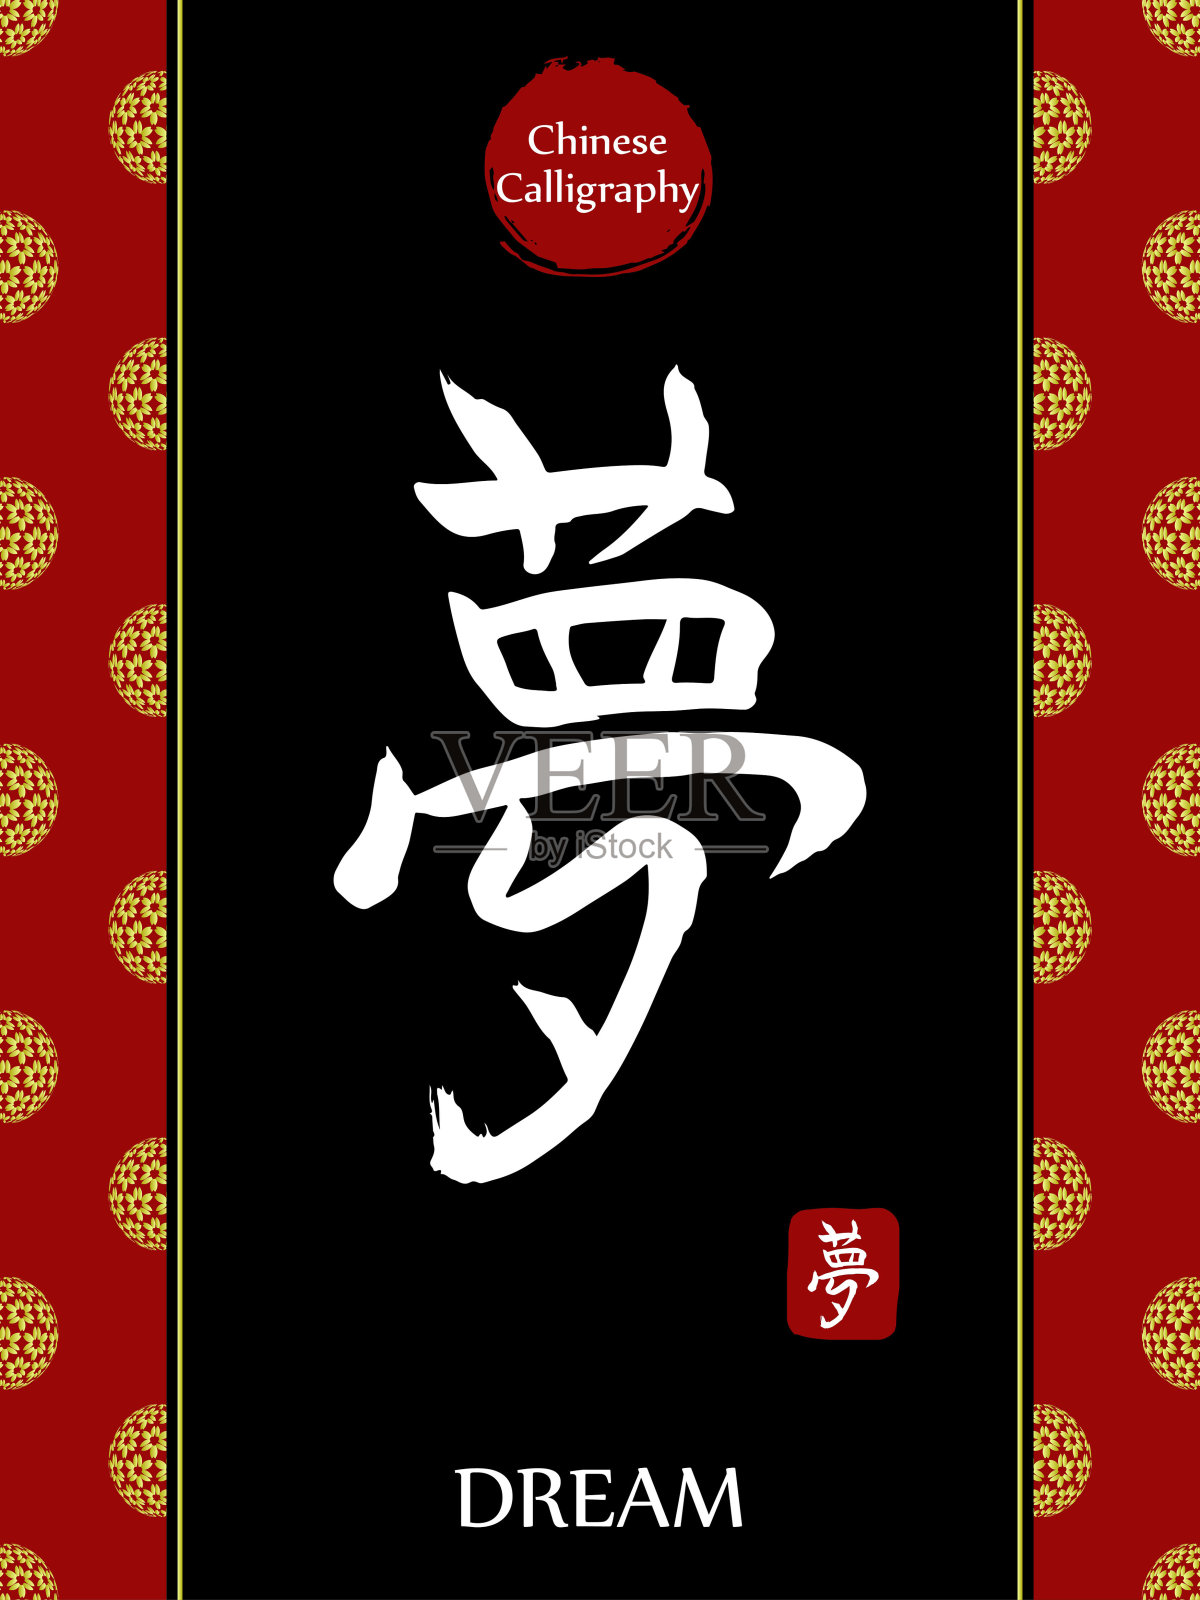 中国书法象形文字的翻译:梦。亚洲金花球农历新年图案。向量中国符号在黑色背景。手绘图画文字。毛笔书法插画图片素材